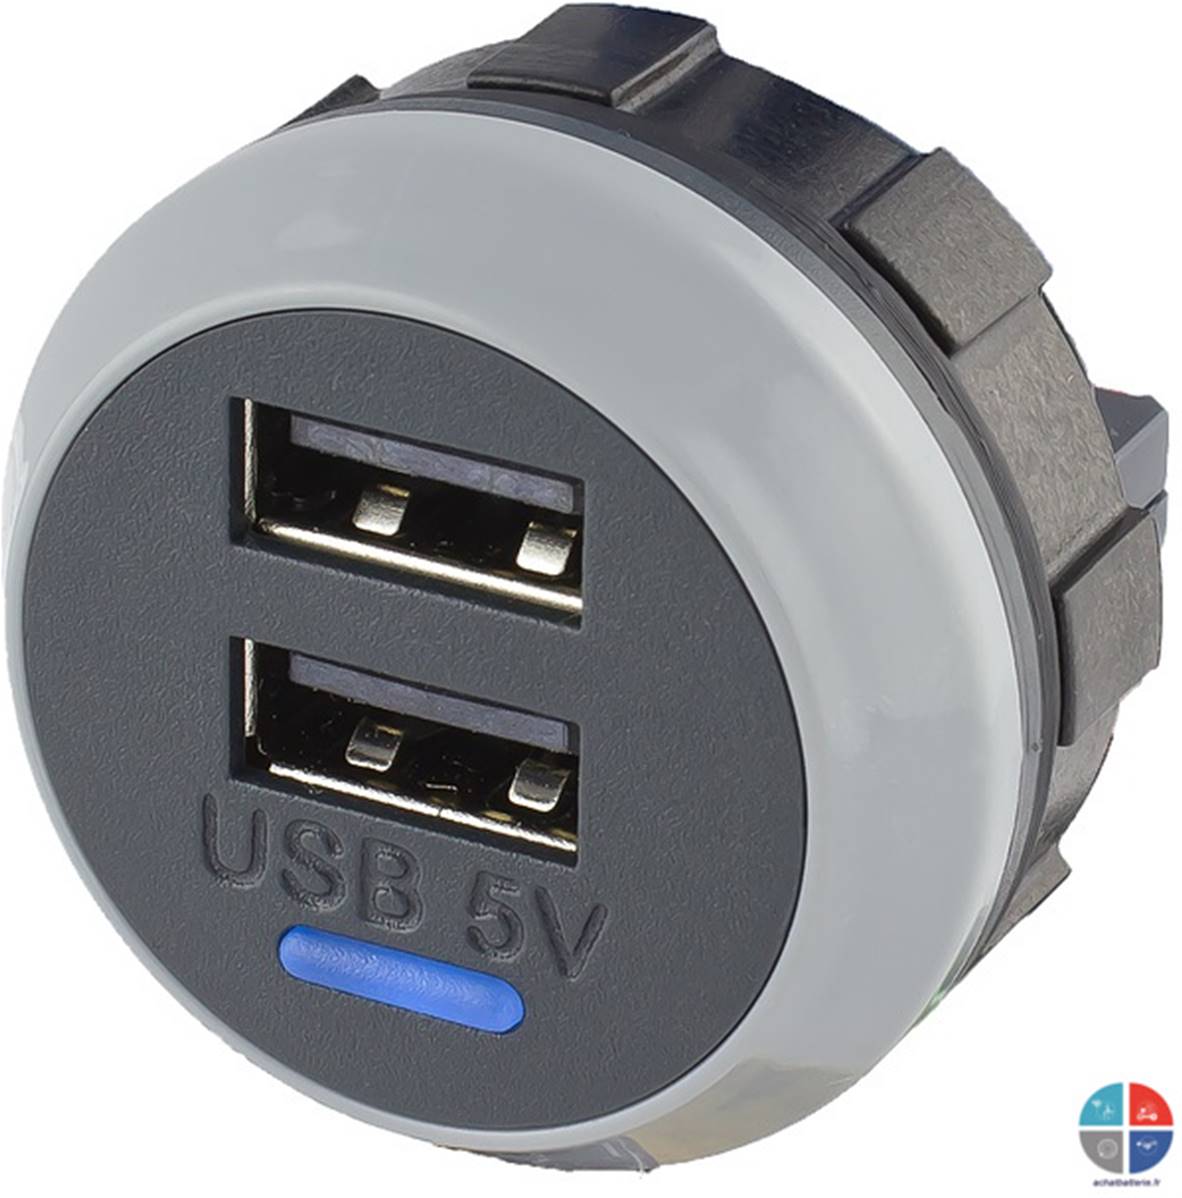 Prise USB 12v - 5v 2.1A encastrable Alfatronix, pour recharger votre  smartphone, tablette directemen